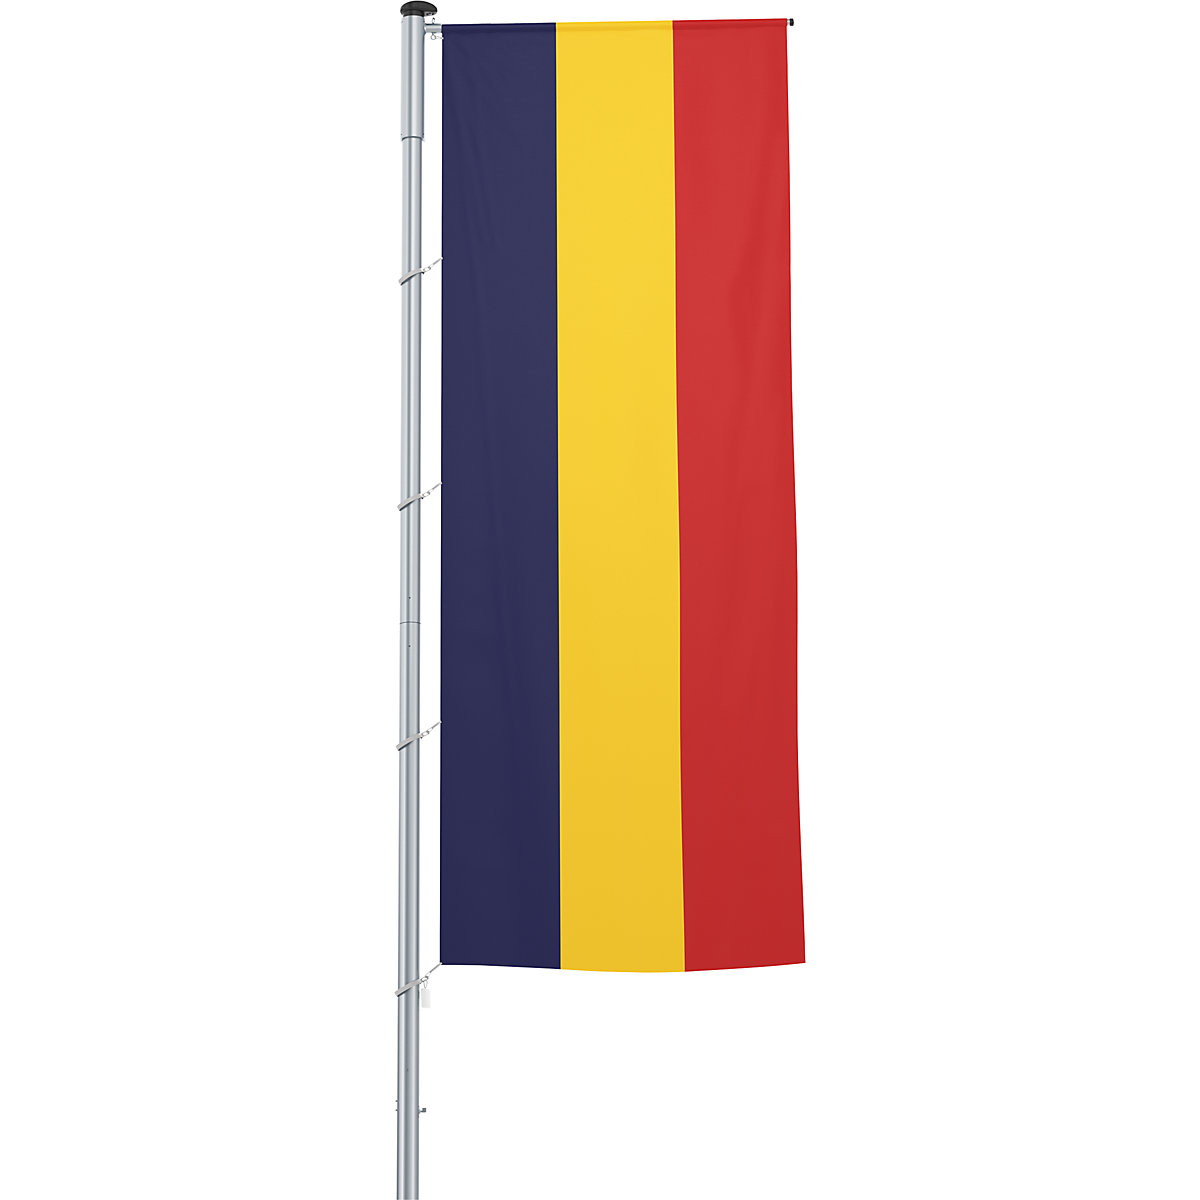 Gémes zászló/országzászló – Mannus, méret 1,2 x 3 m, Románia-27